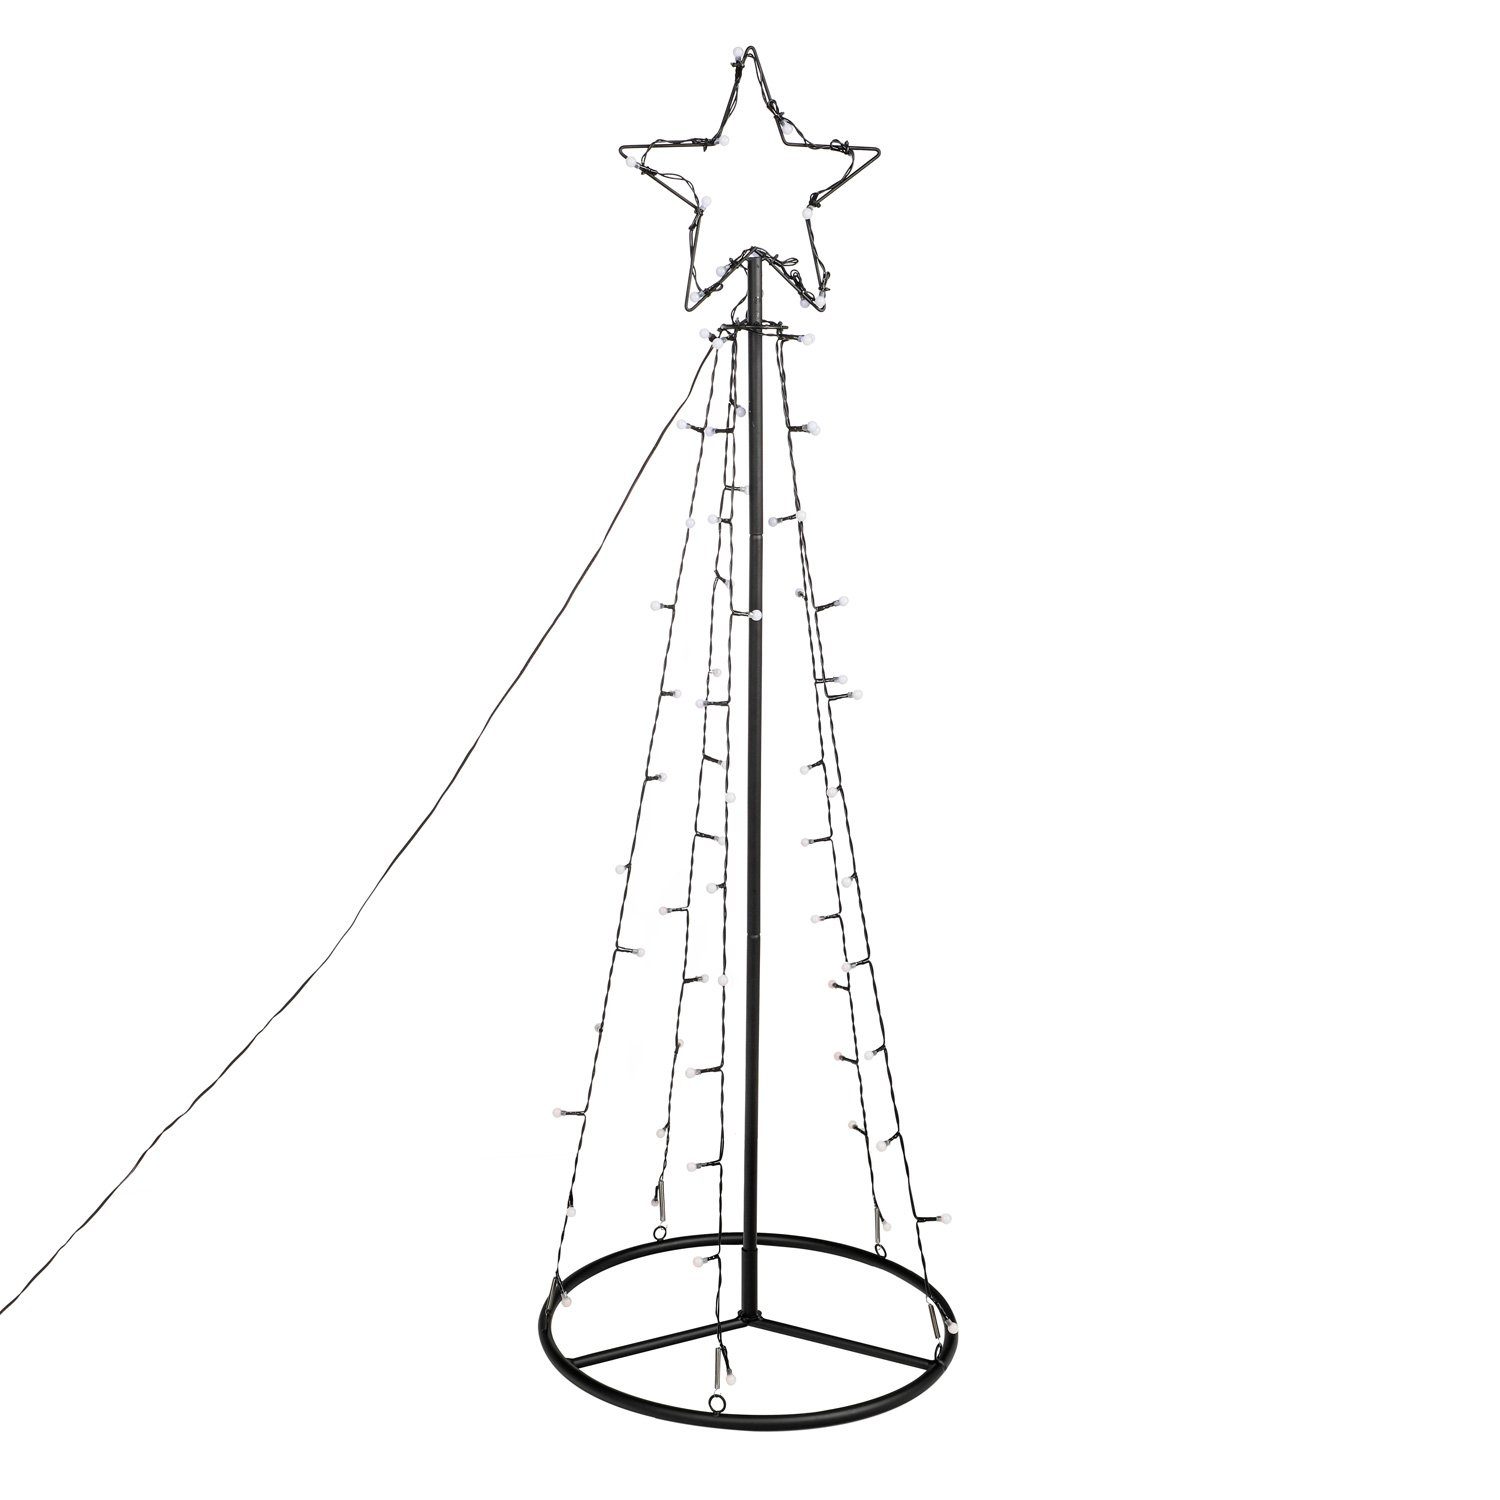 LED mit 2m LED Stern bunt / LED mehrfarbig 62 außen, LED Classic, bunte Weihnachtsbaum MARELIDA Lichterbaum Baum